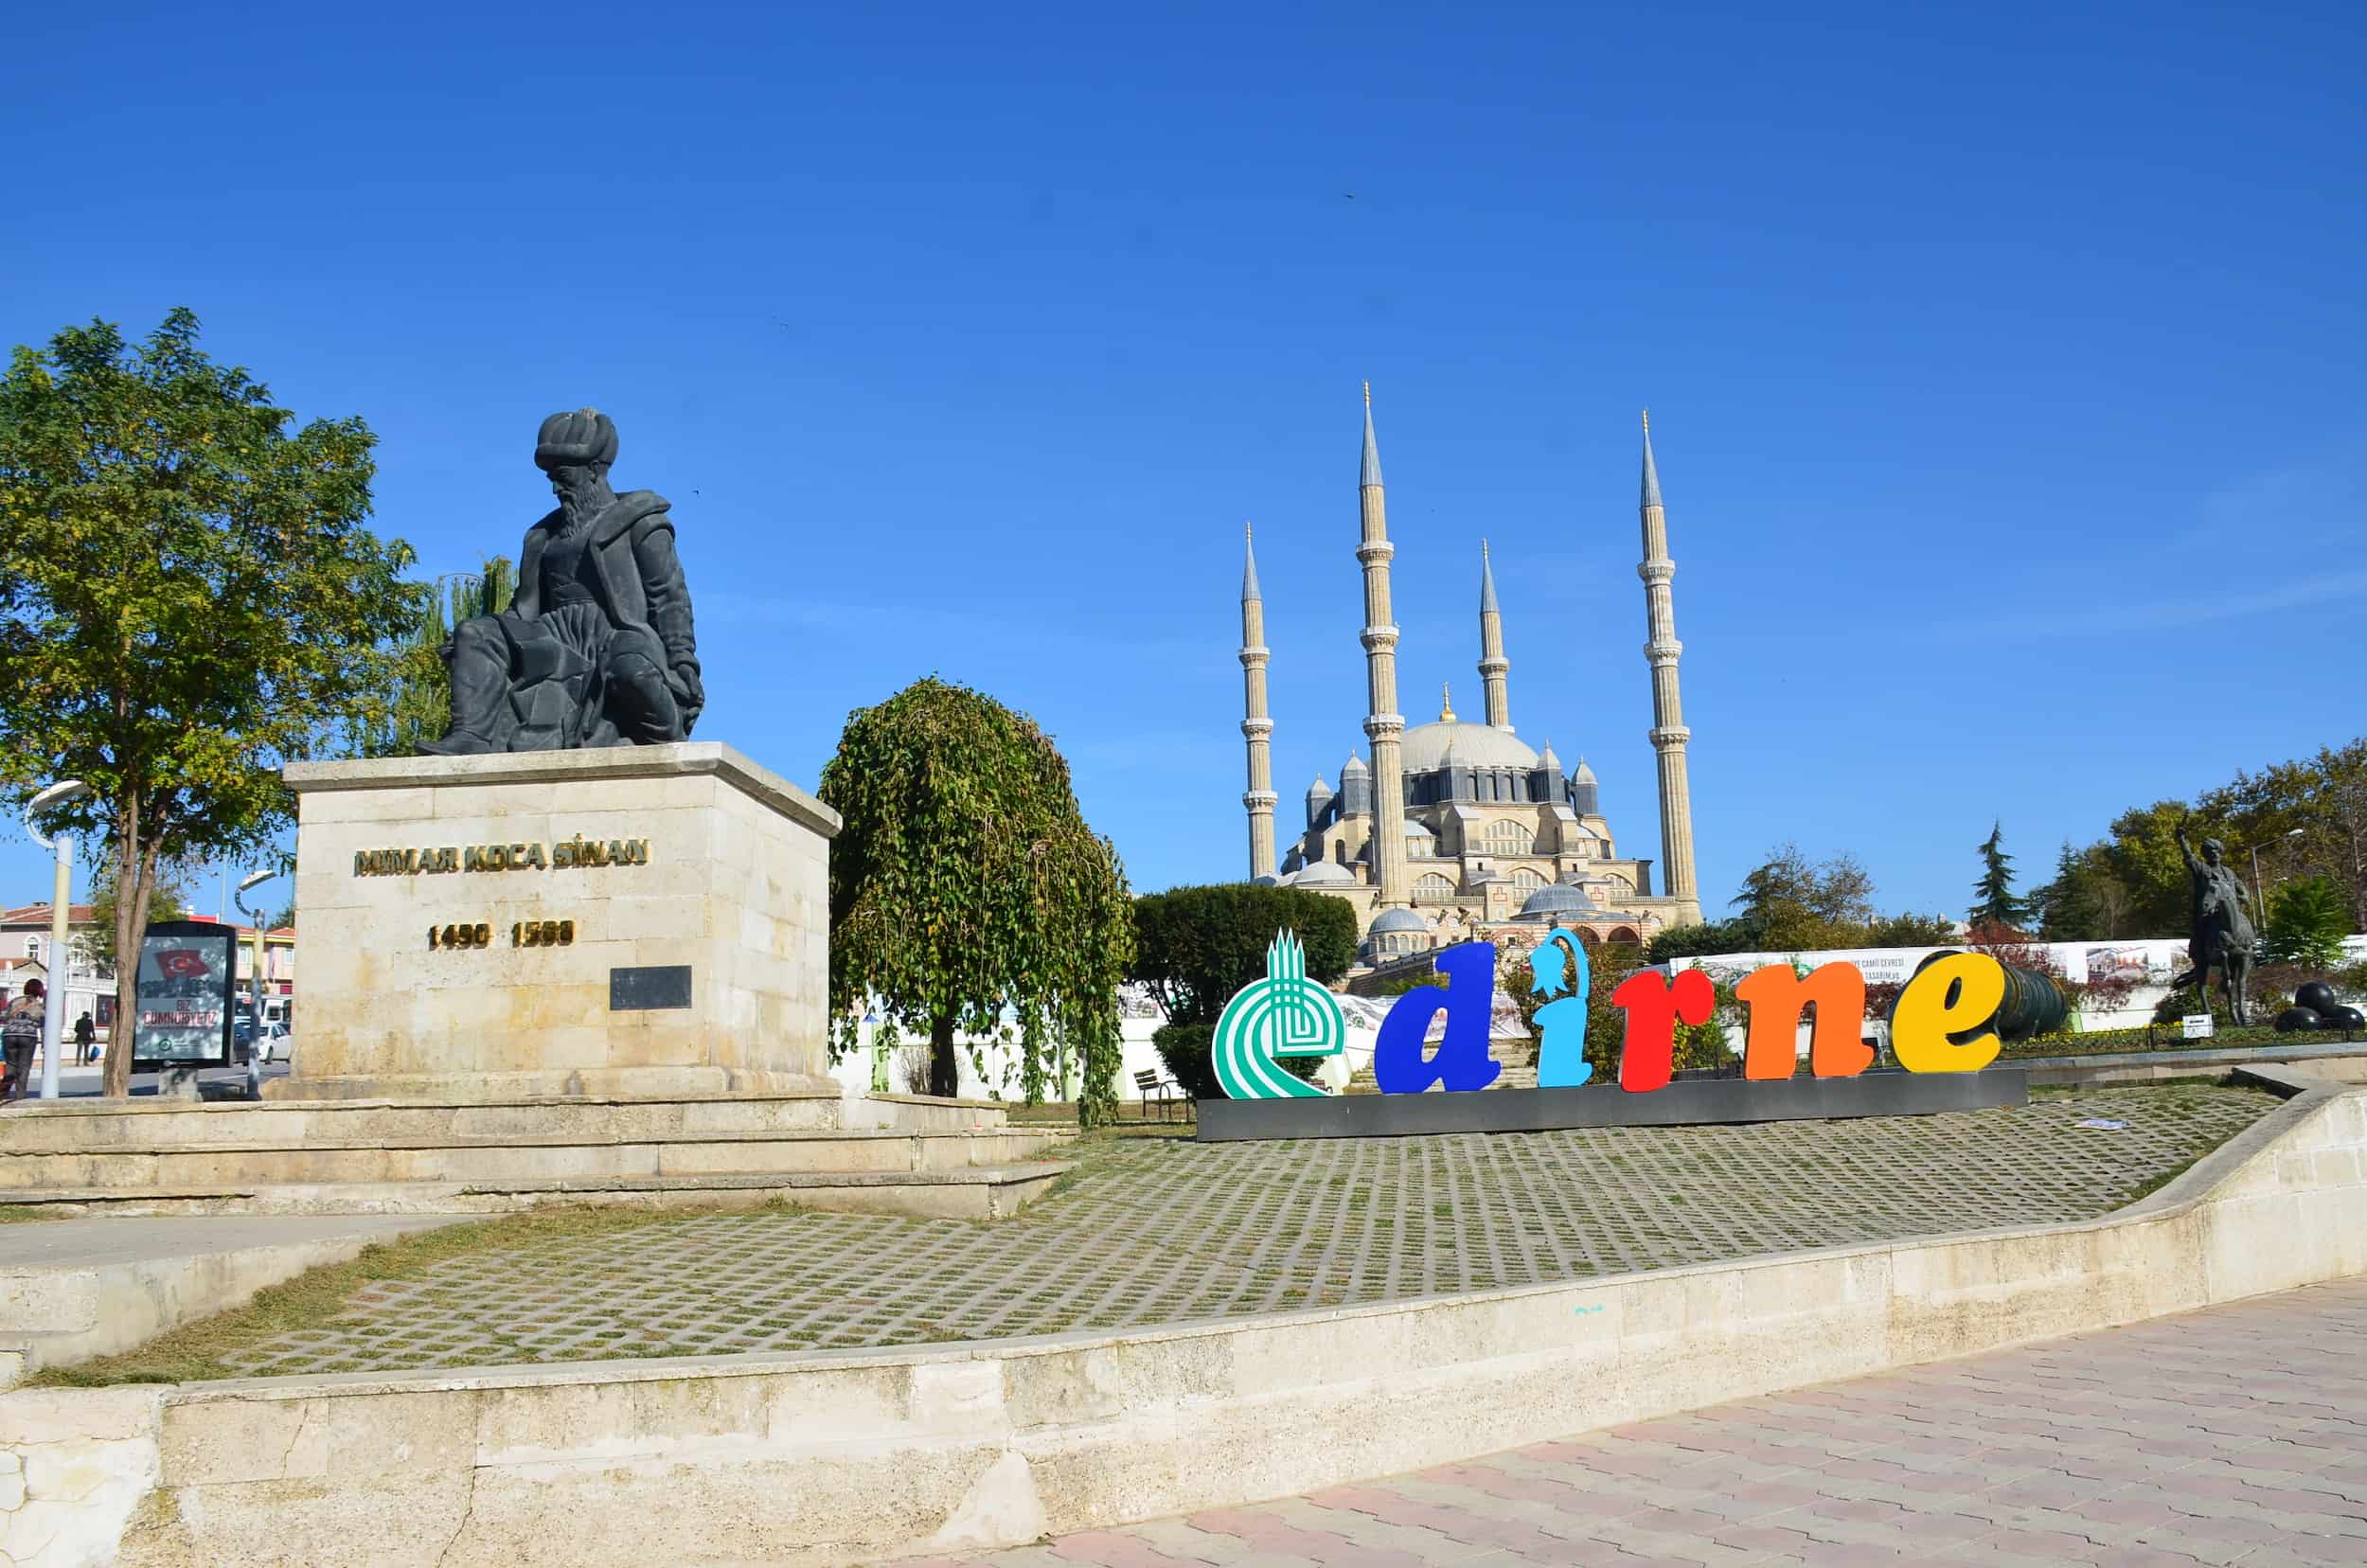 Edirne sign and Mimar Sinan monument in Edirne, Turkey